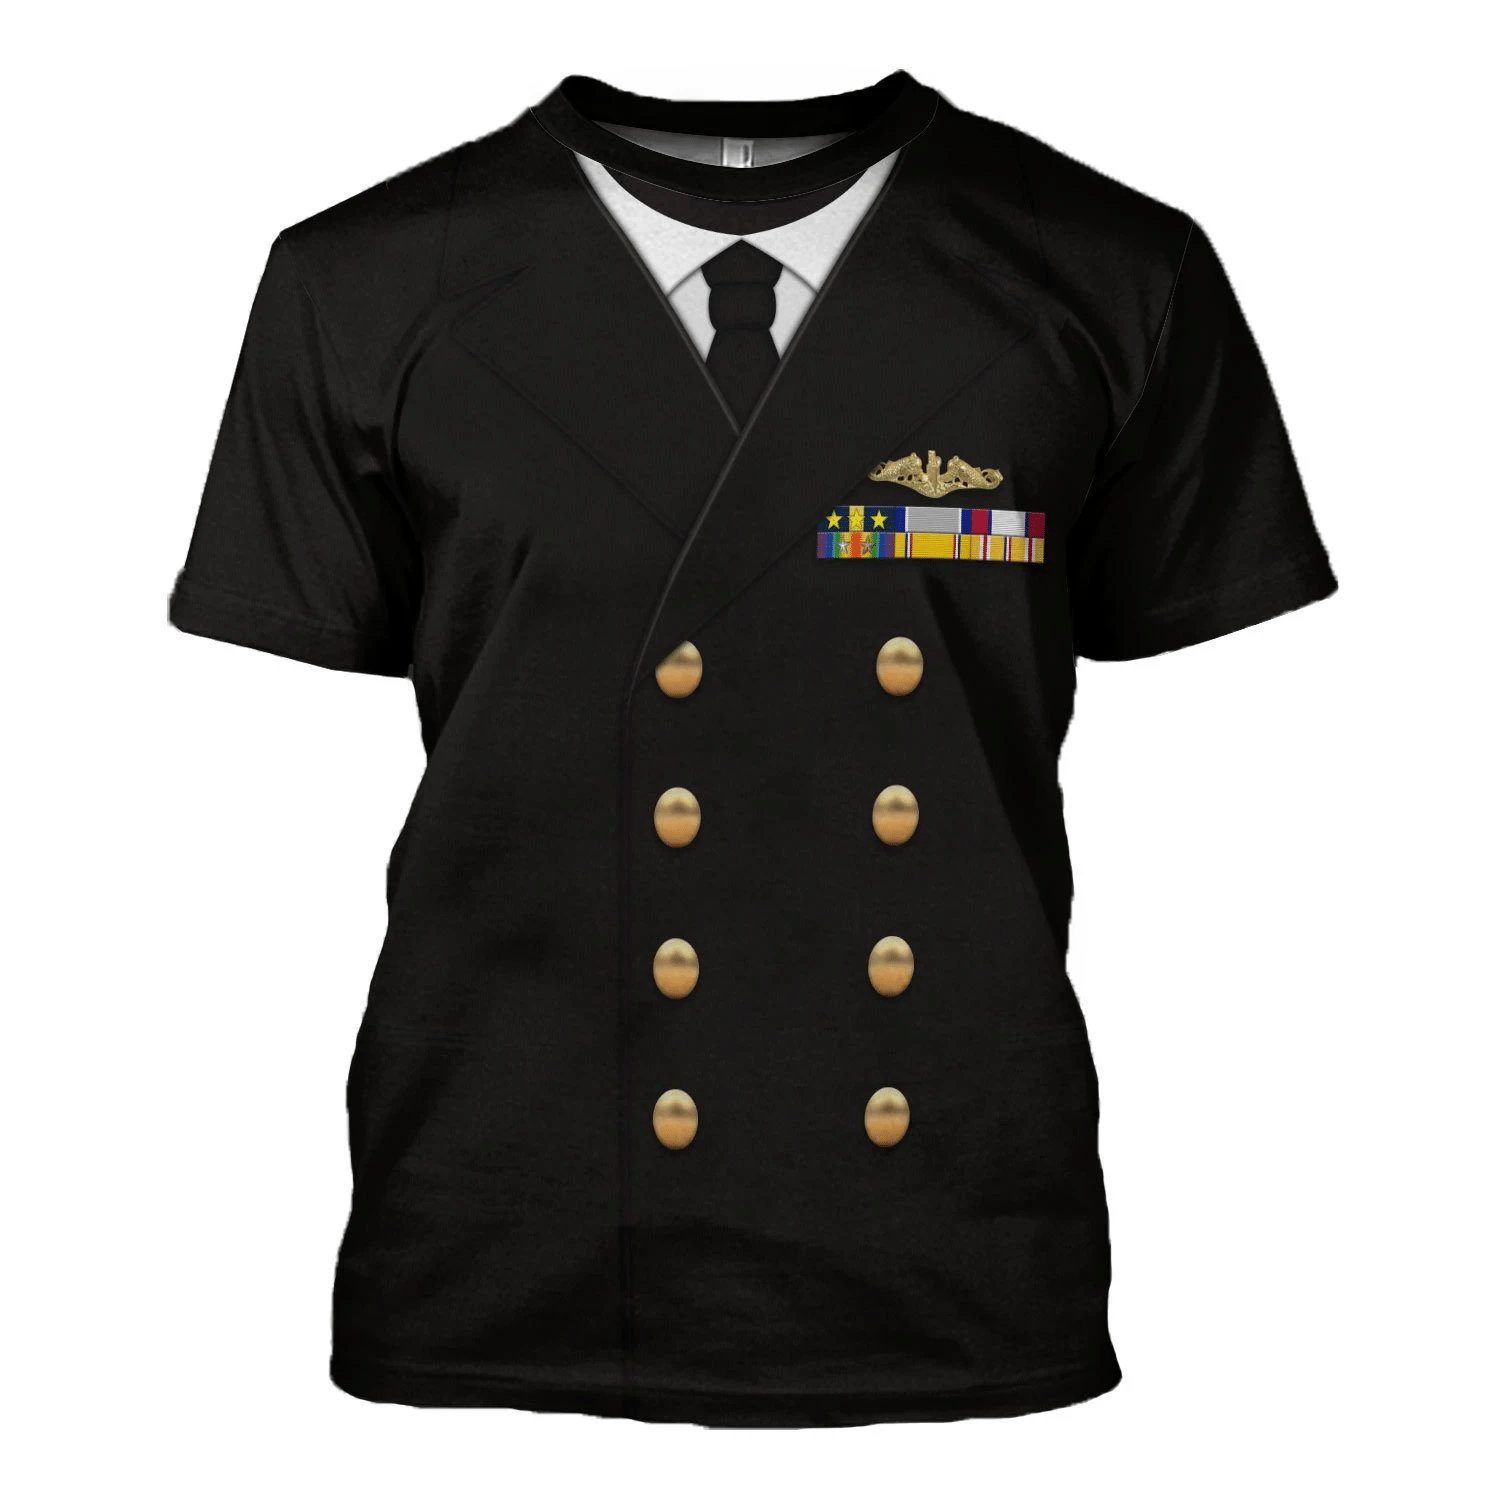 Gearhomie US Navy Fleet Admiral Chester W. Nimitz Costume t-shirt